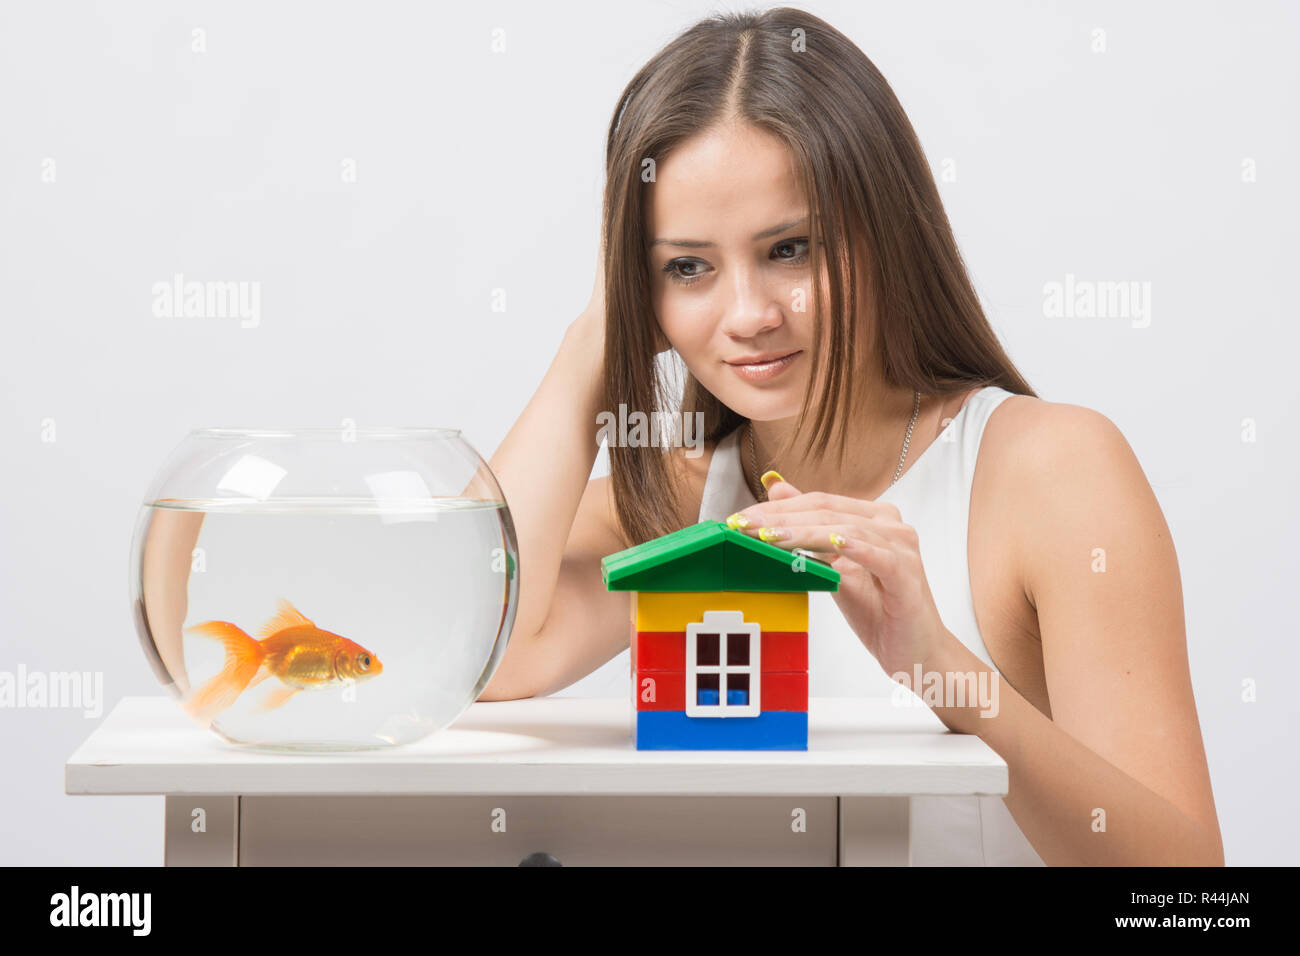 La ragazza guarda un goldfish e mettere la mano sul giocattolo house Foto Stock